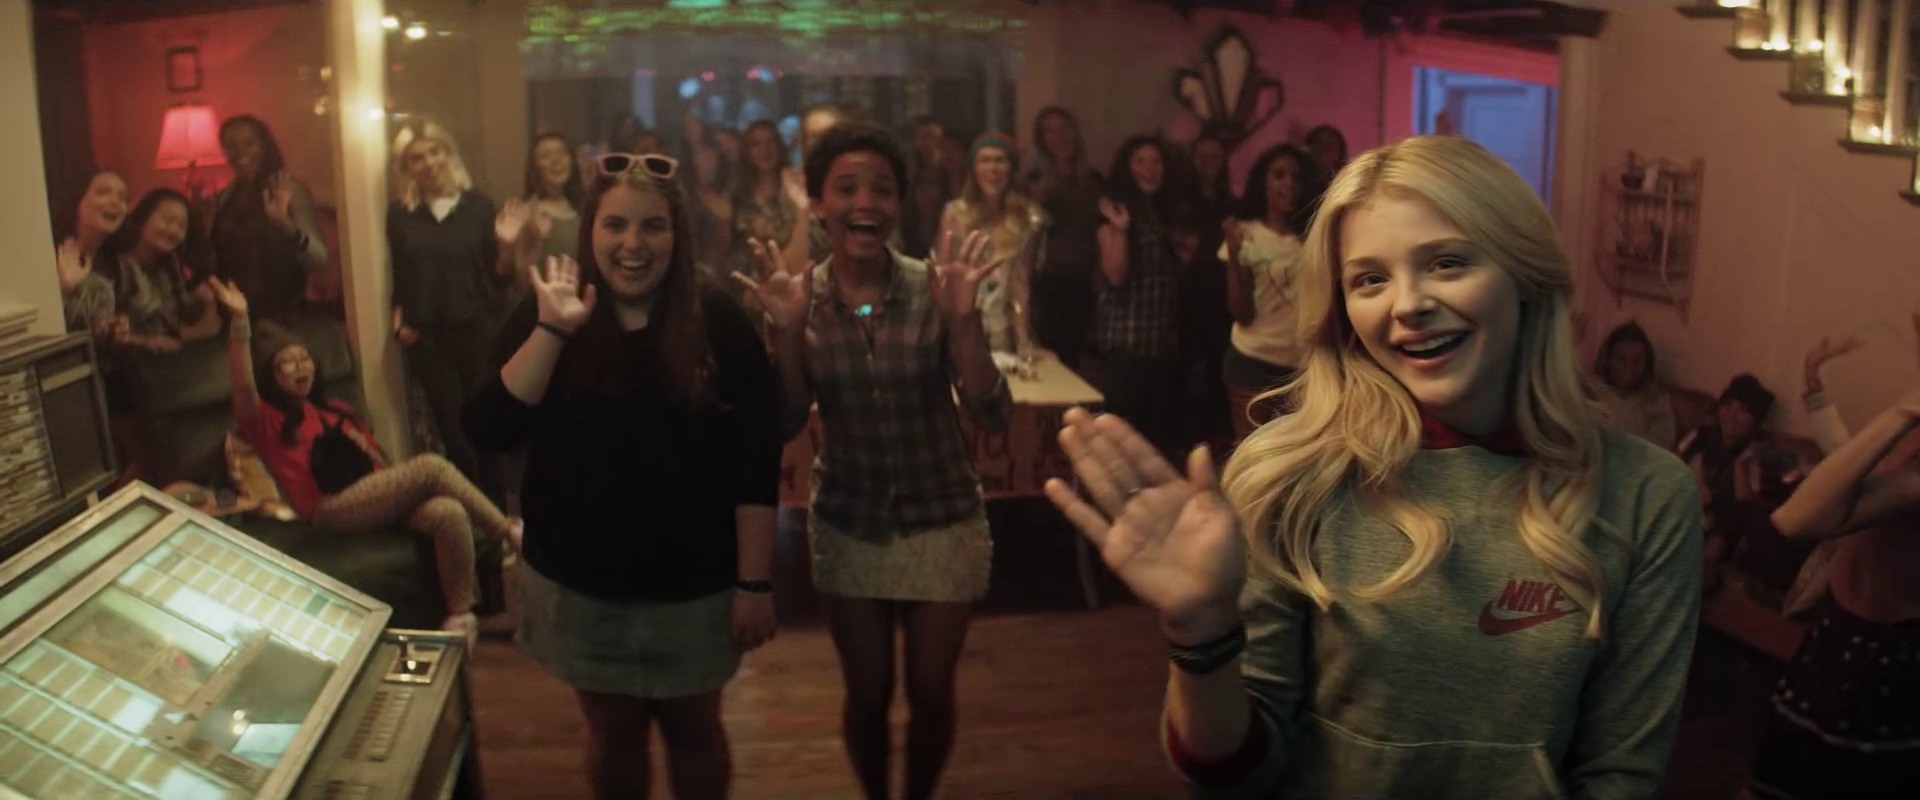 Chloë Grace Moretz parties next door in ‘Neighbors 2: Sorority Rising’ trailer